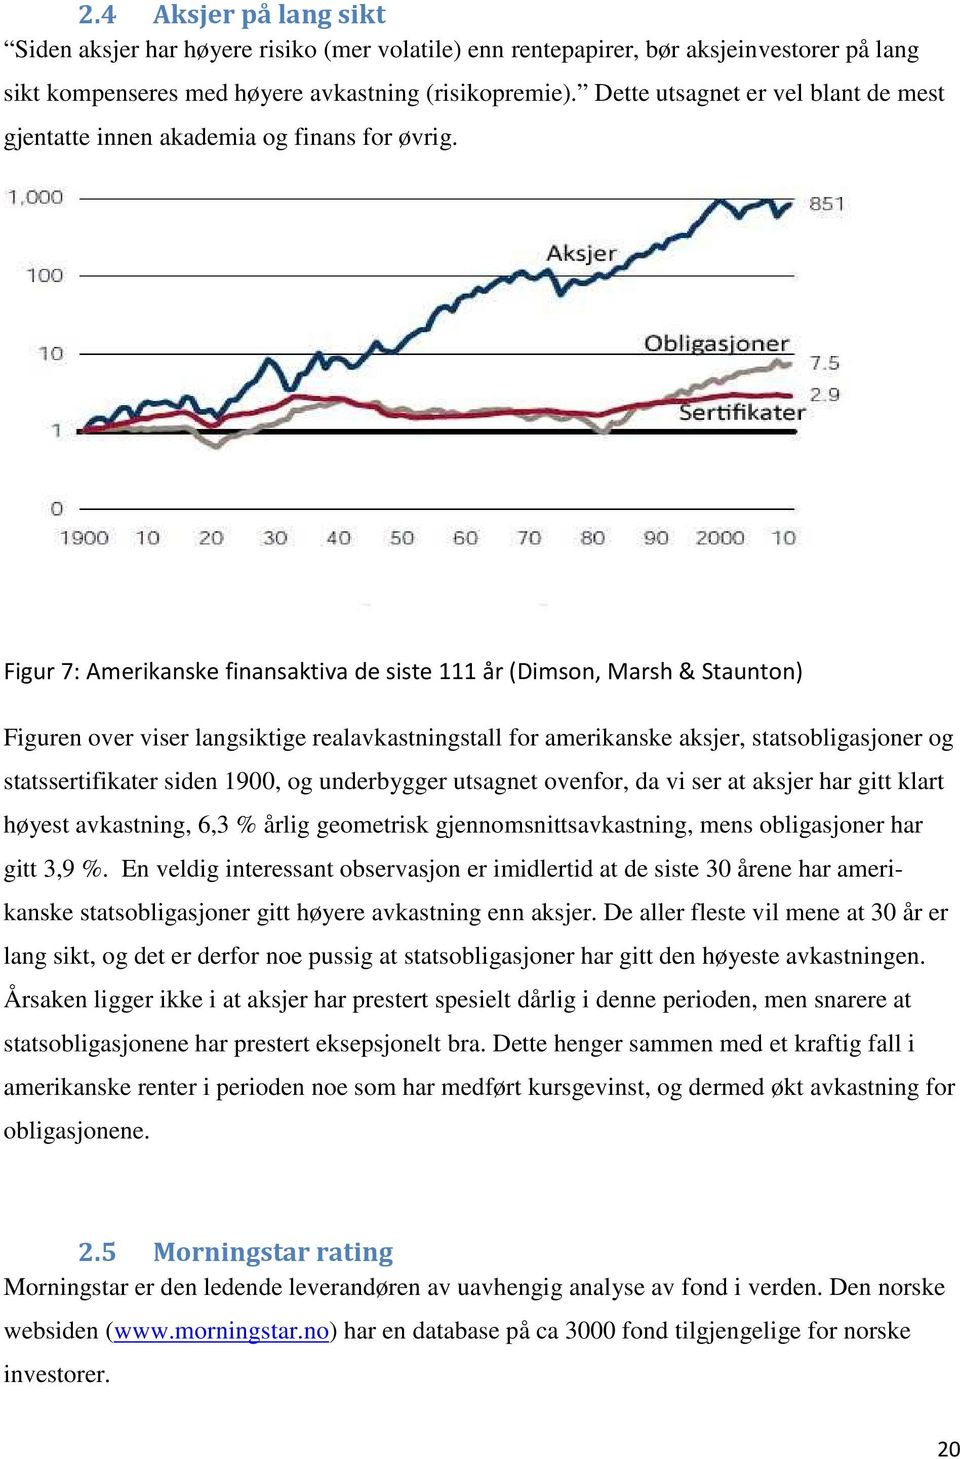 Figur 7: Amerikanske finansaktiva de siste 111 år (Dimson, Marsh & Staunton) Figuren over viser langsiktige realavkastningstall for amerikanske aksjer, statsobligasjoner og statssertifikater siden